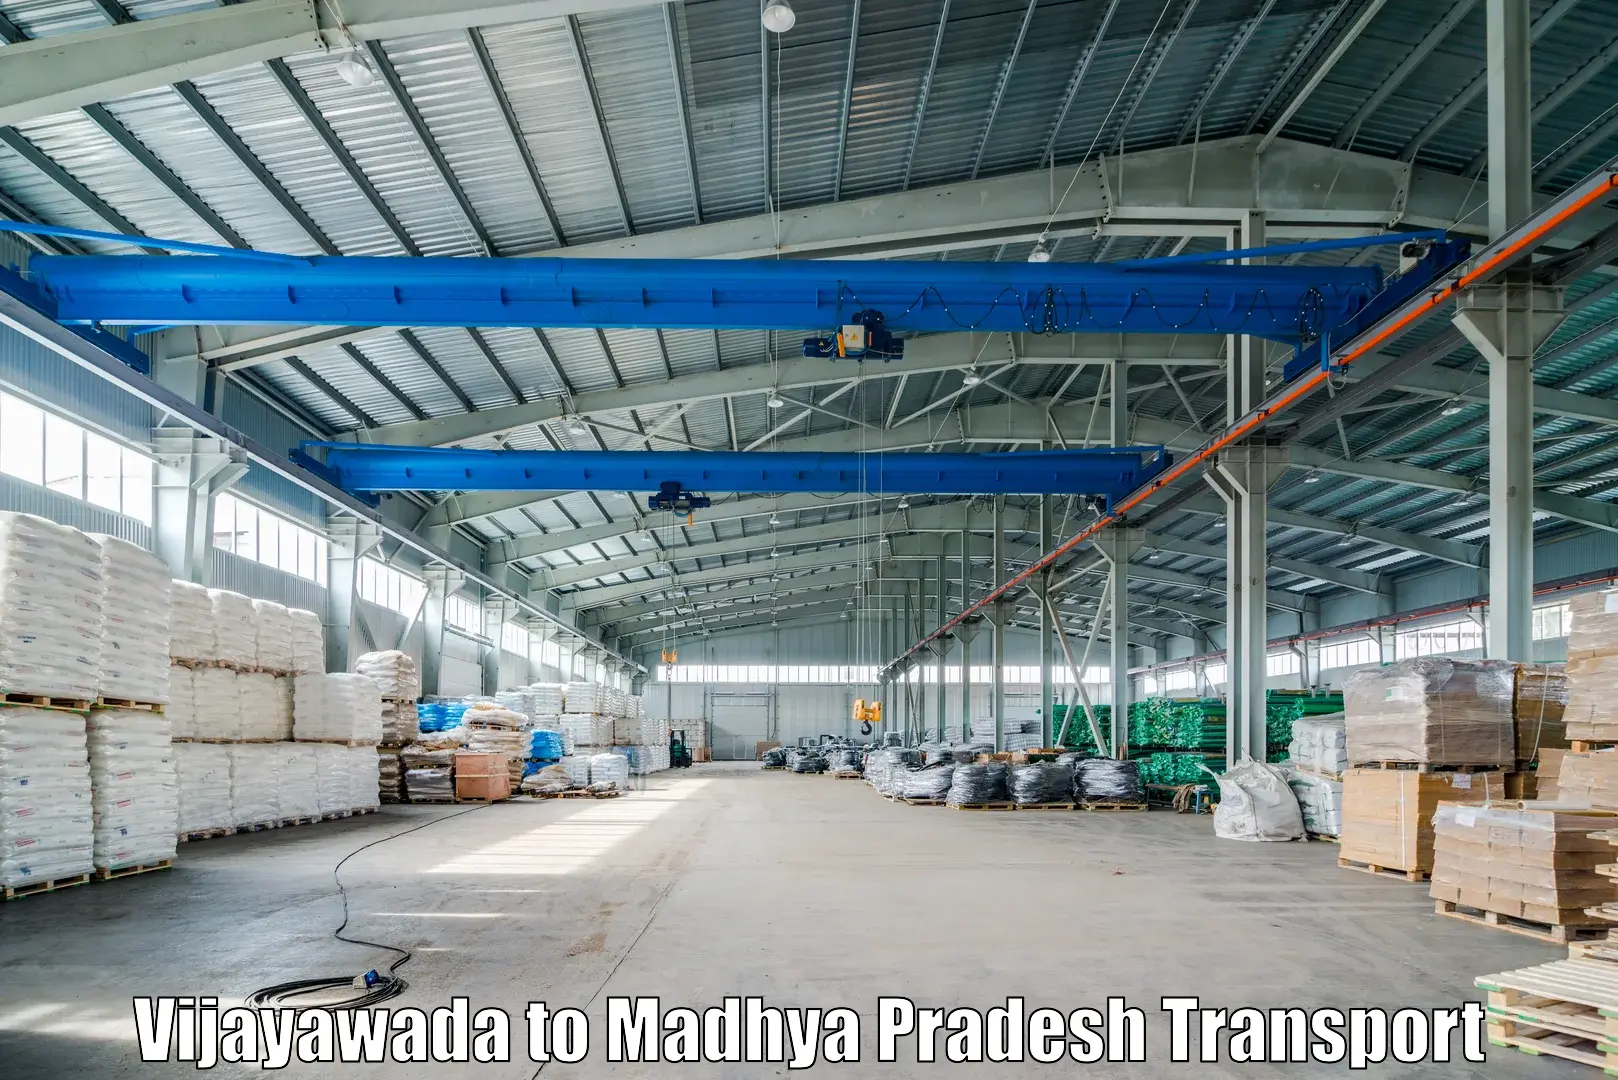 Express transport services Vijayawada to Mandideep